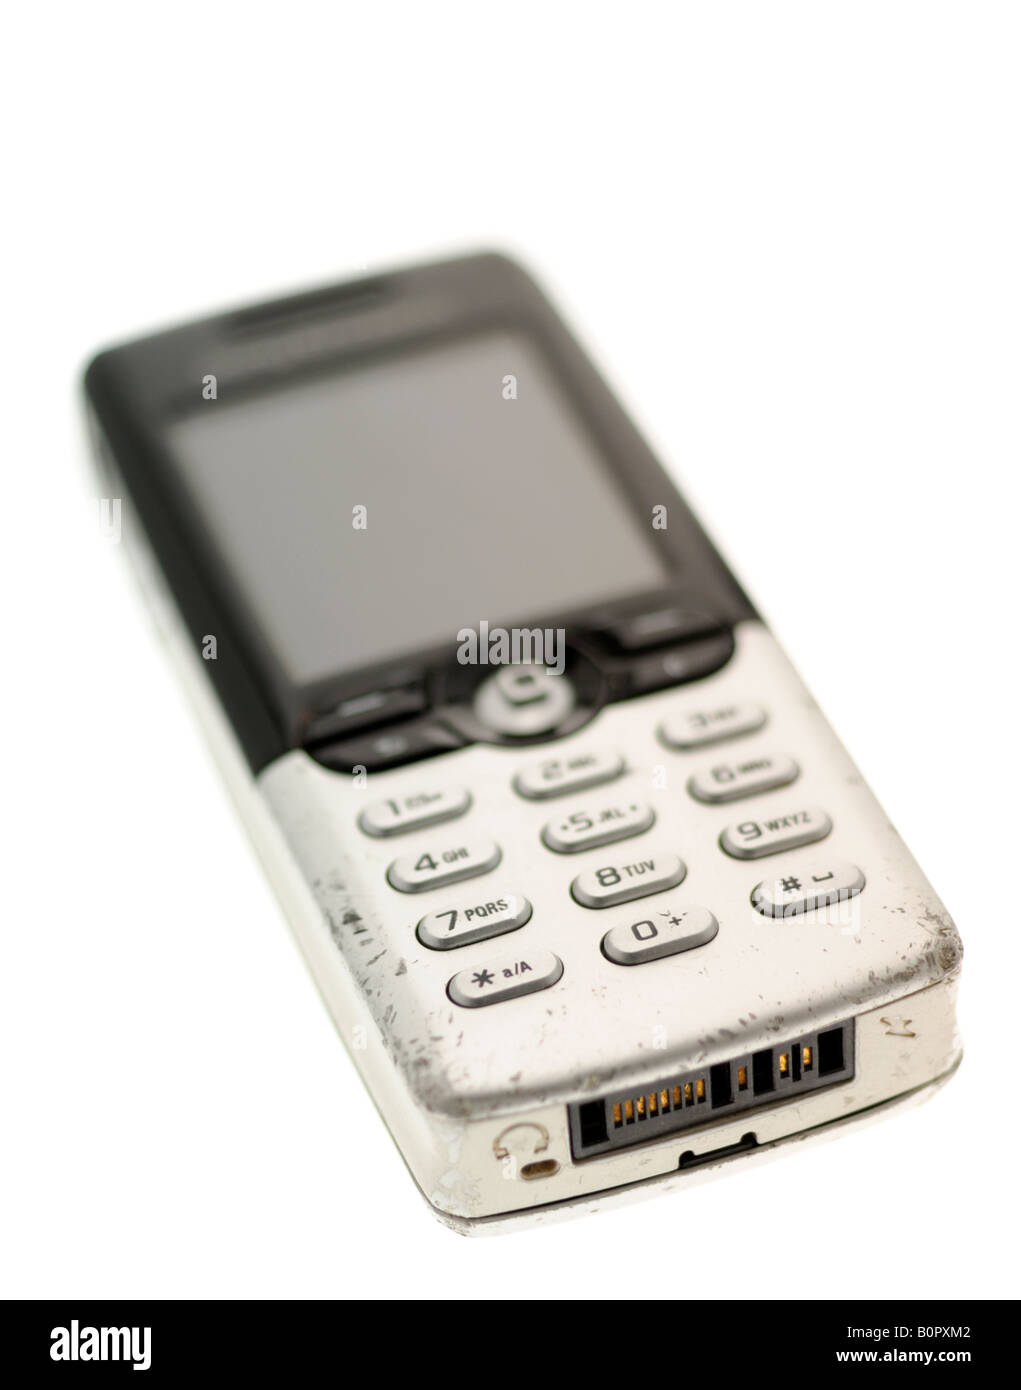 Sony Ericsson Mobile Telephone. Stock Photo